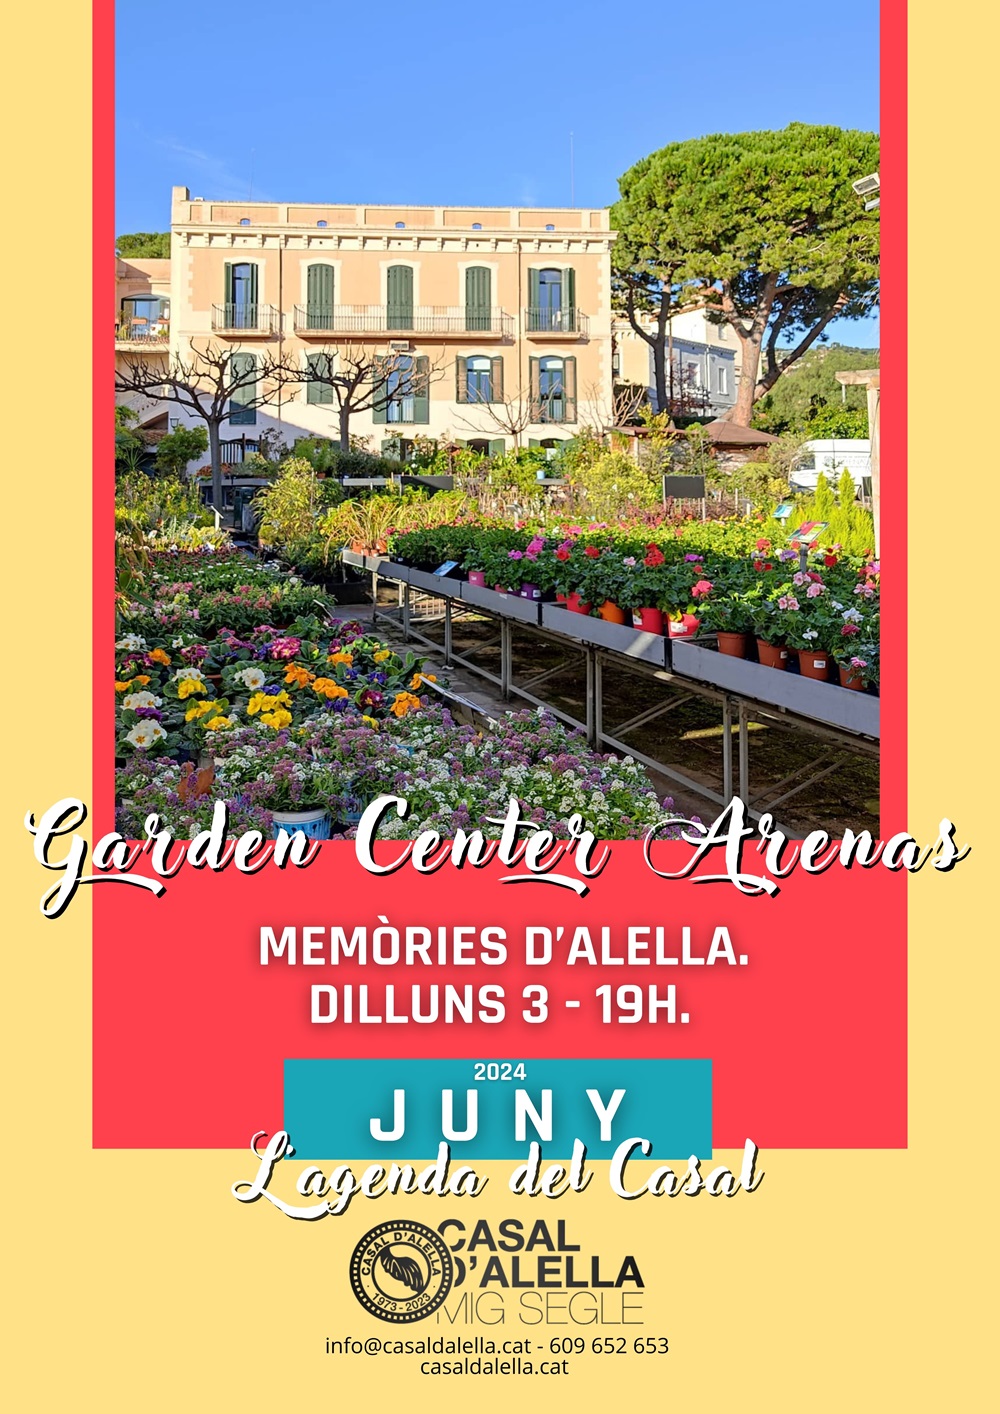 Garden Center Arenas